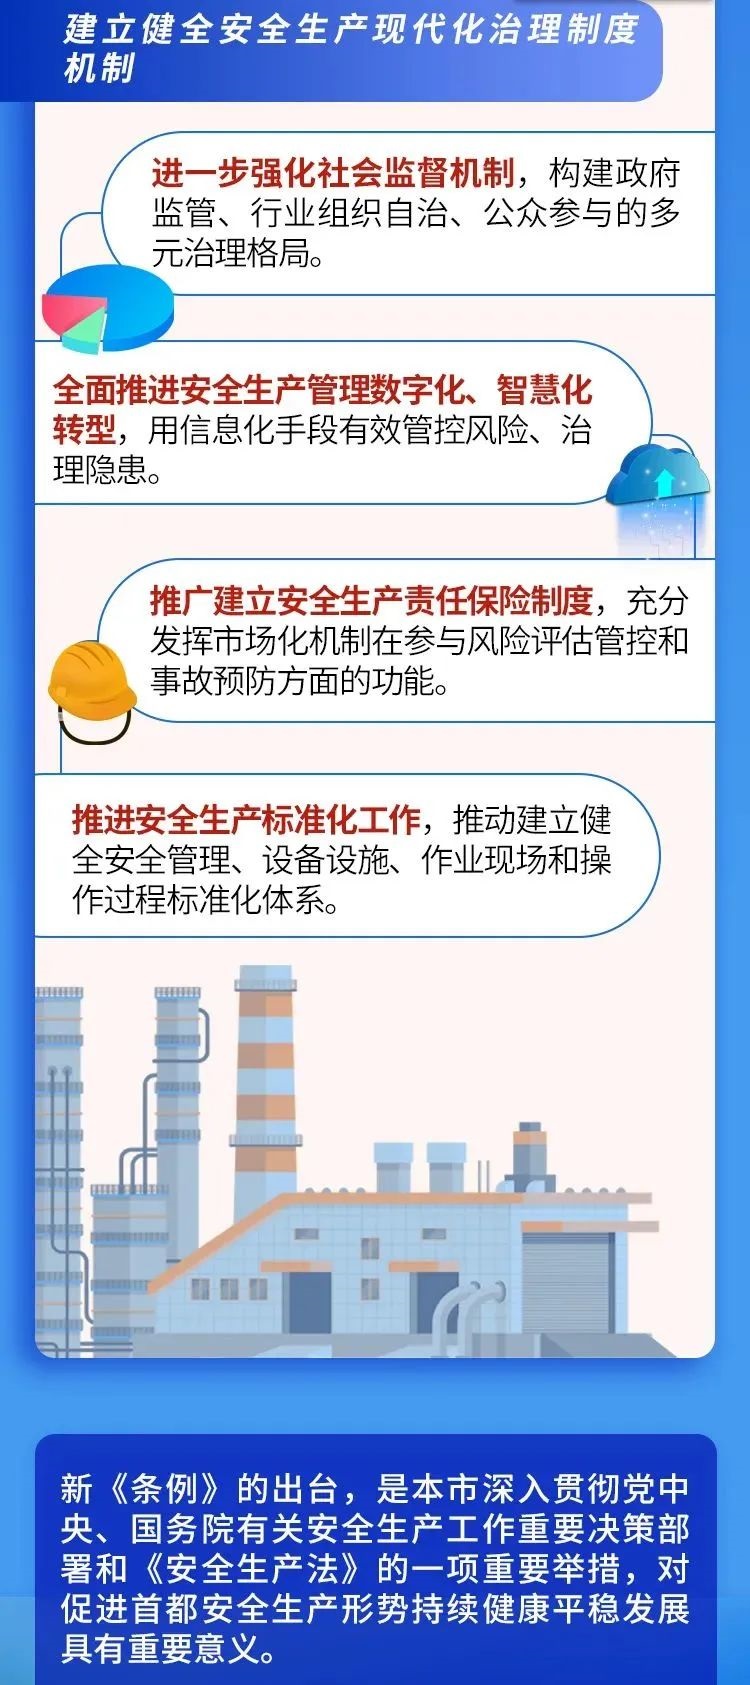 《北京市安全生产条例》10大亮点  9.jpg